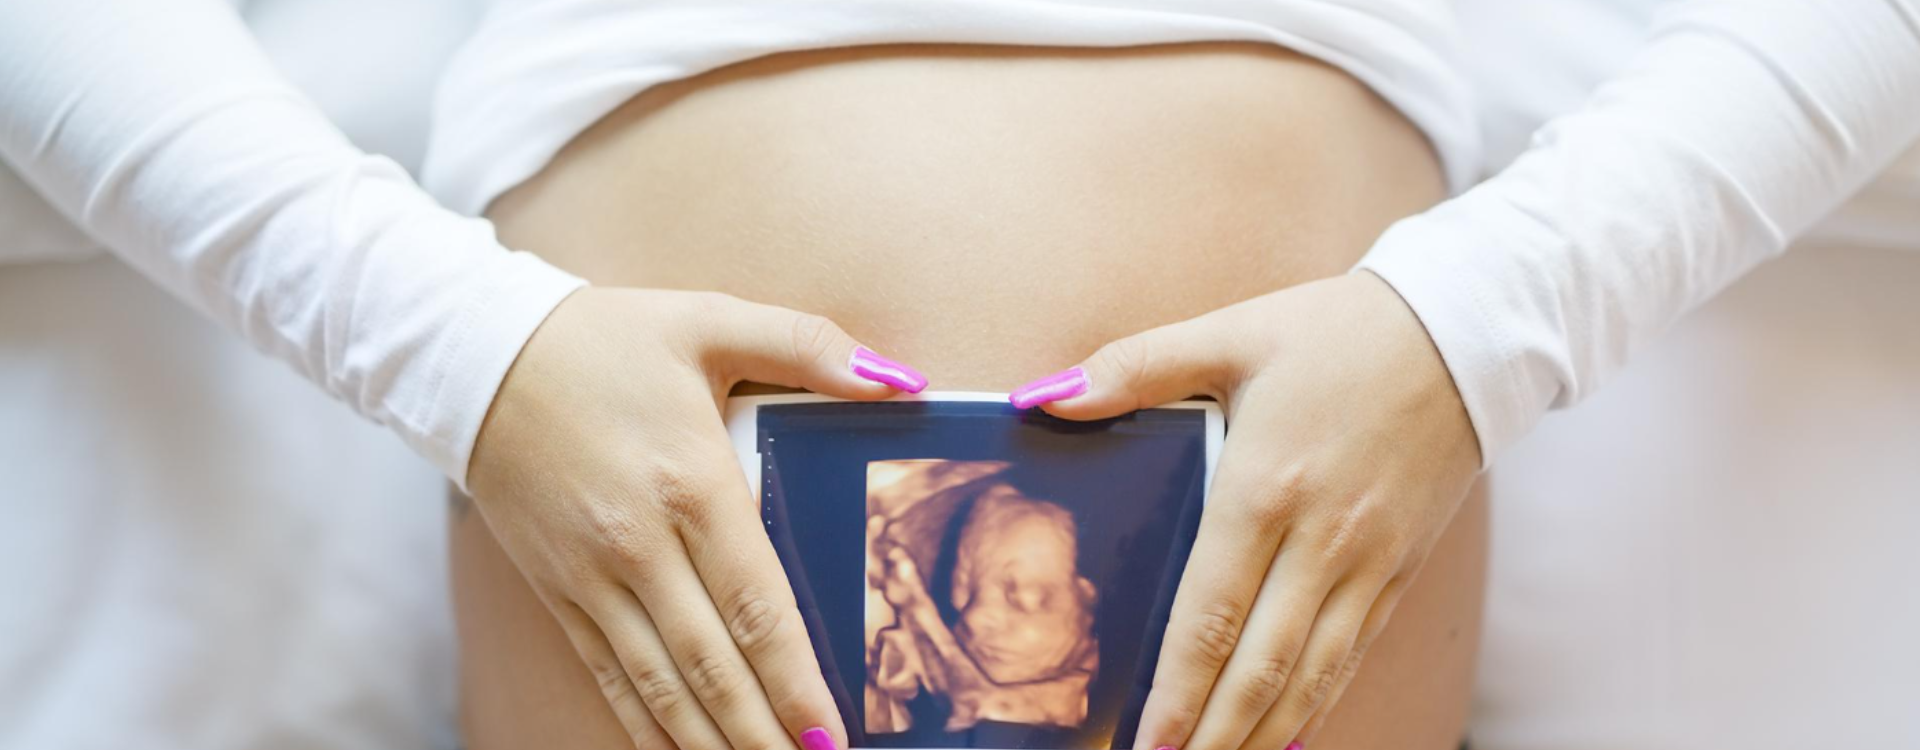 Pregna DHA dla kobiet w ciąży i karmiących piersią